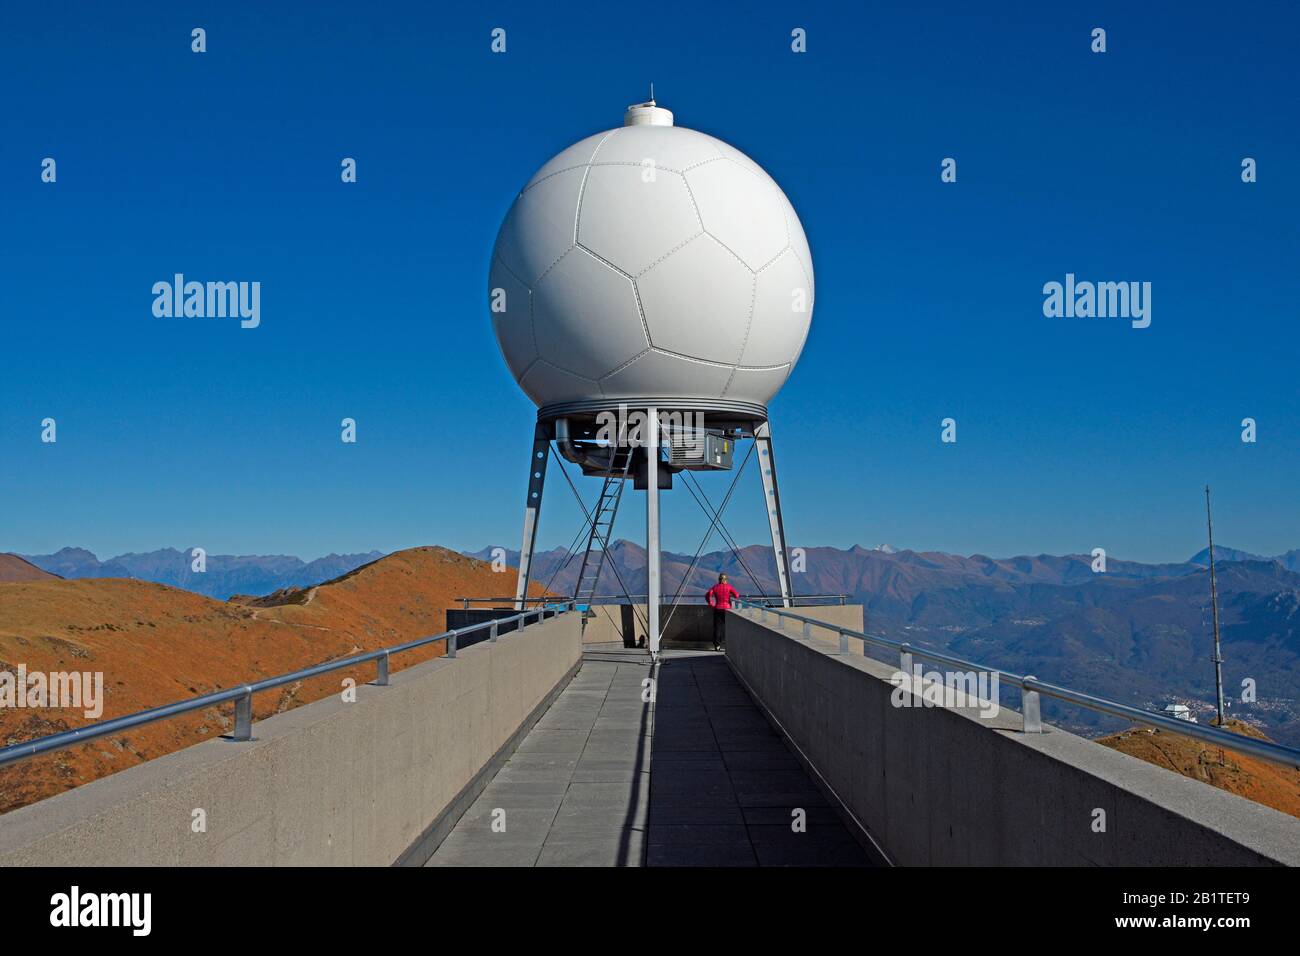 MeteoSvizzera radar meteo sul Monte Lema, sul confine italiano svizzero, Luino, Lago maggiore, Lombardia, Italia, Lugano, Ticino, Svizzera Foto Stock